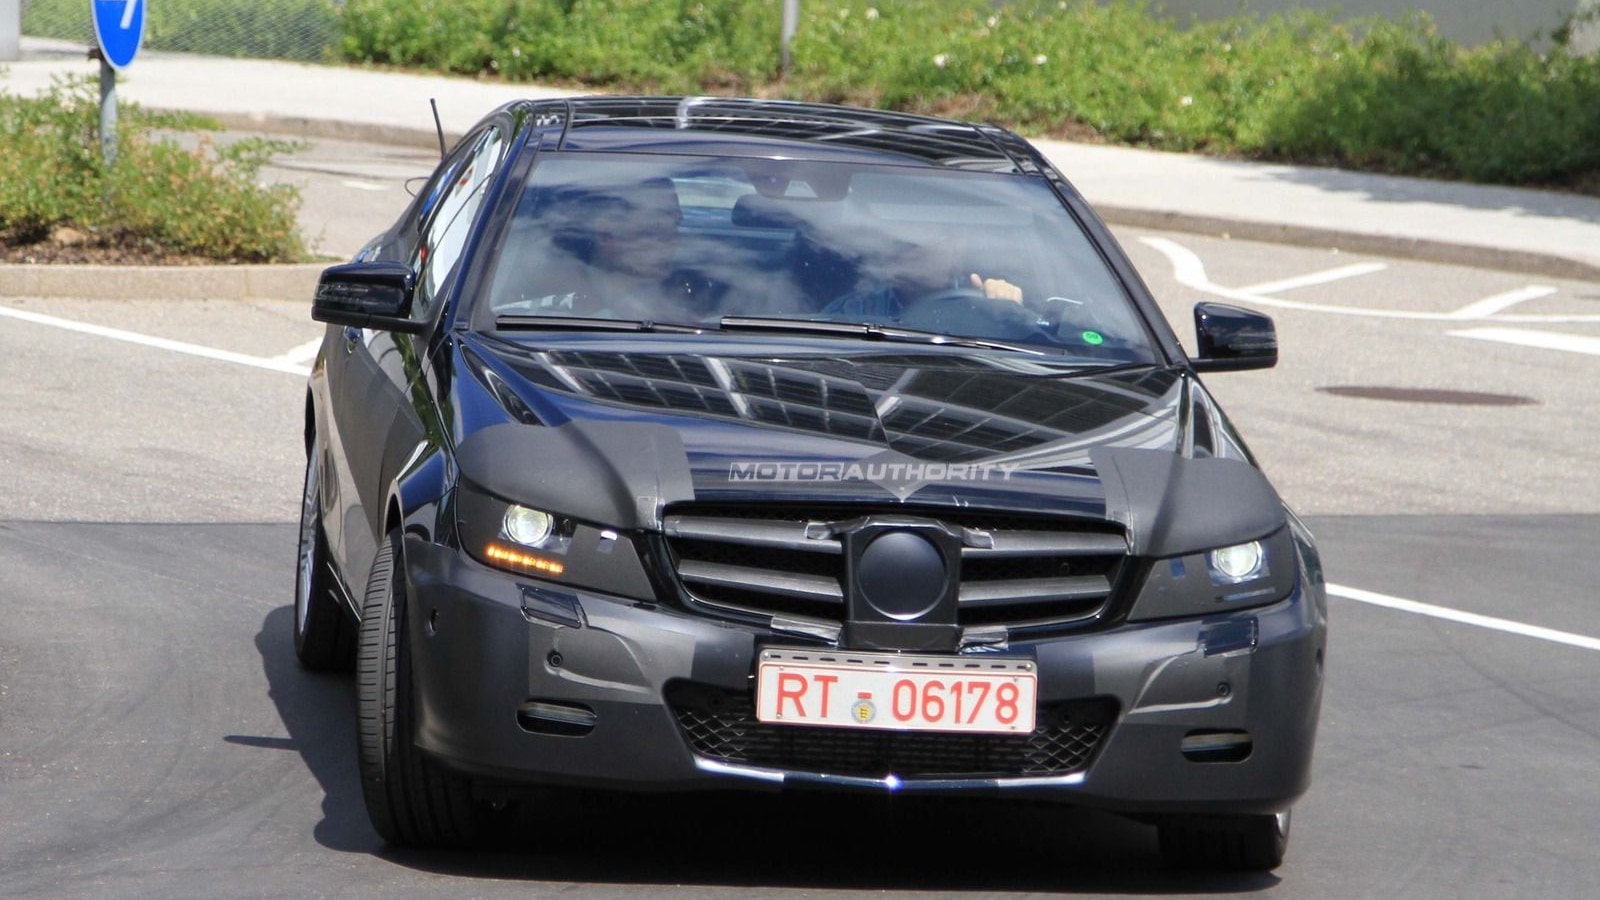 2012 Mercedes-Benz C-Class Coupe spy shots